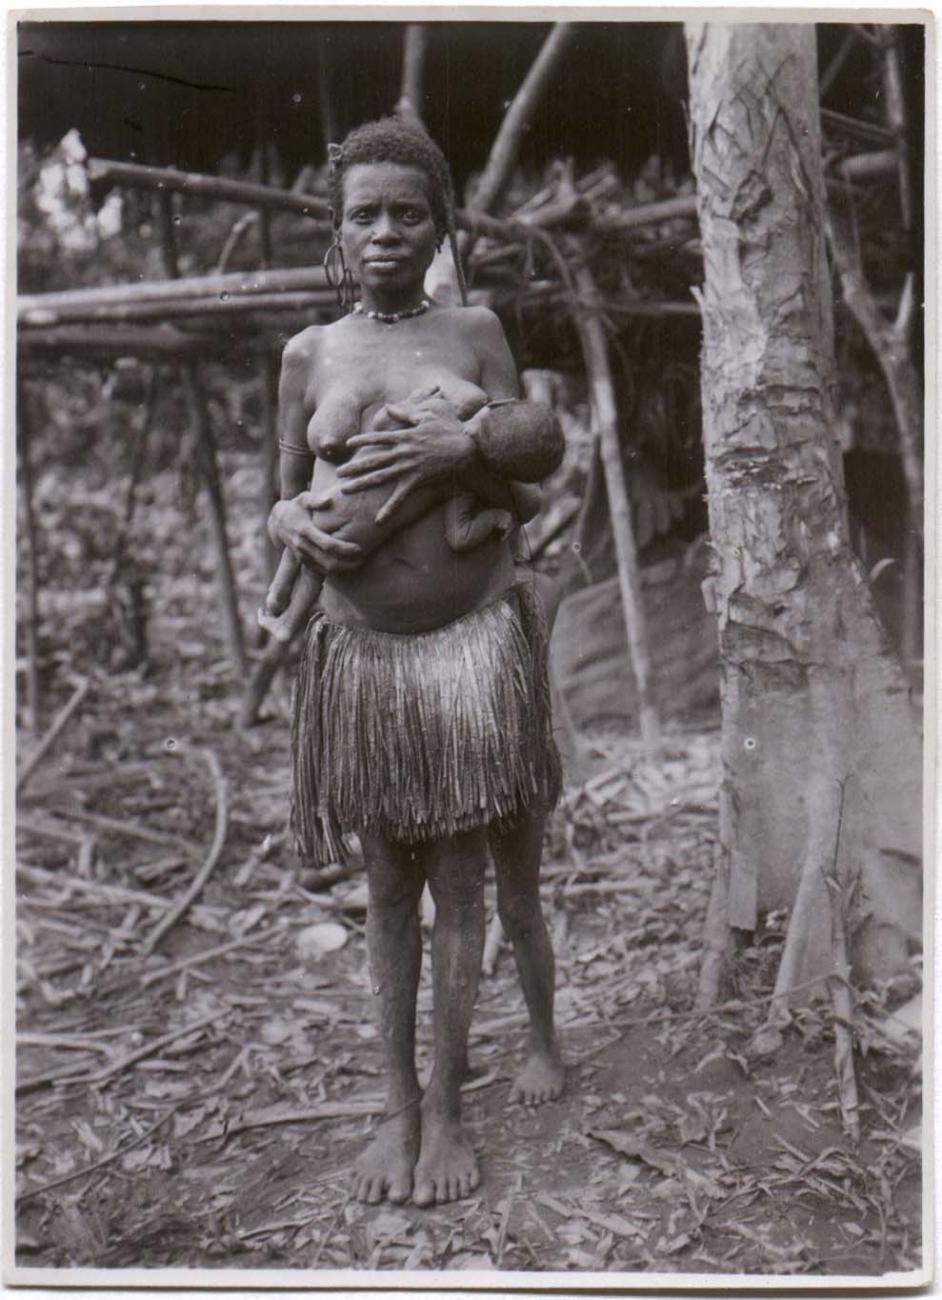 BD/38/8 - 
Vrouw met kind aan de borst.
